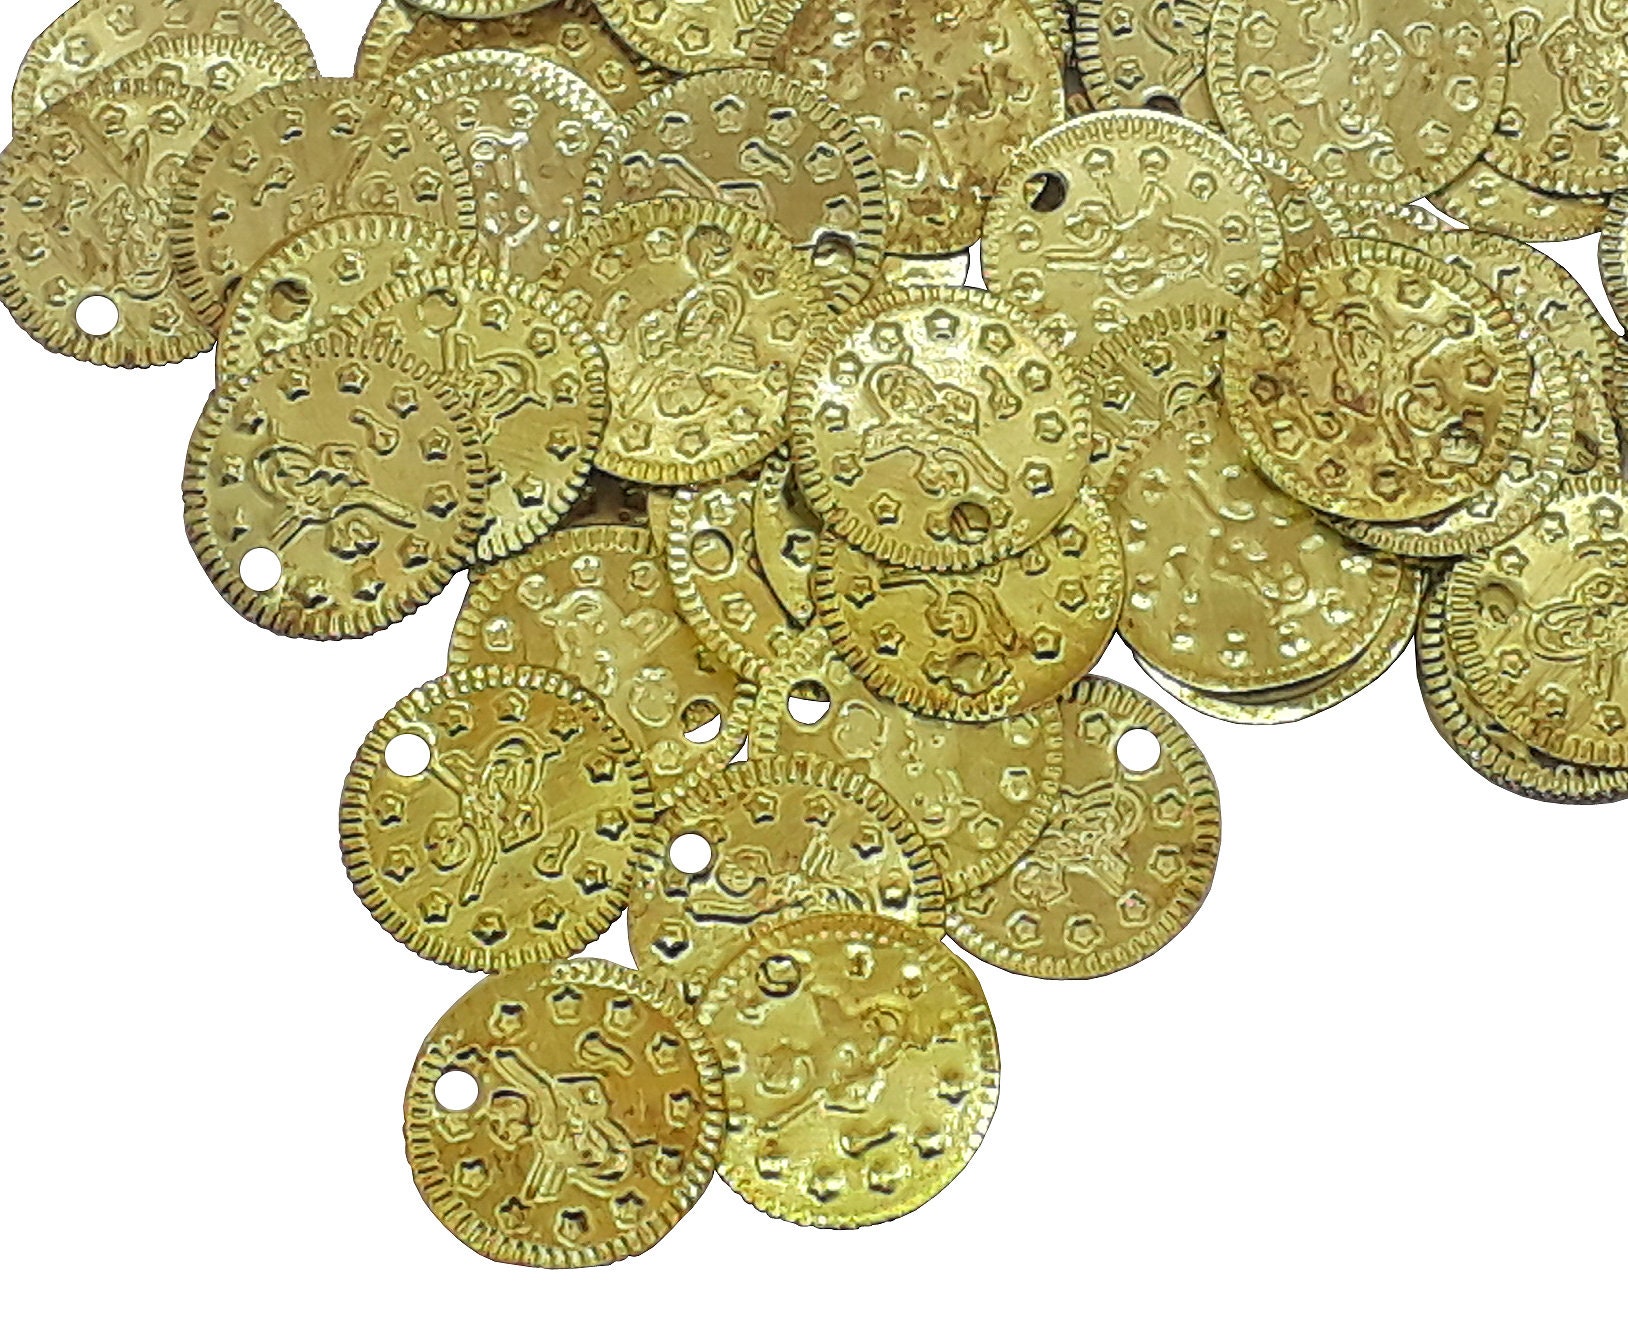 Trastero De Monedas De Oro Con Una Caja De Metal Fuerte Y Un